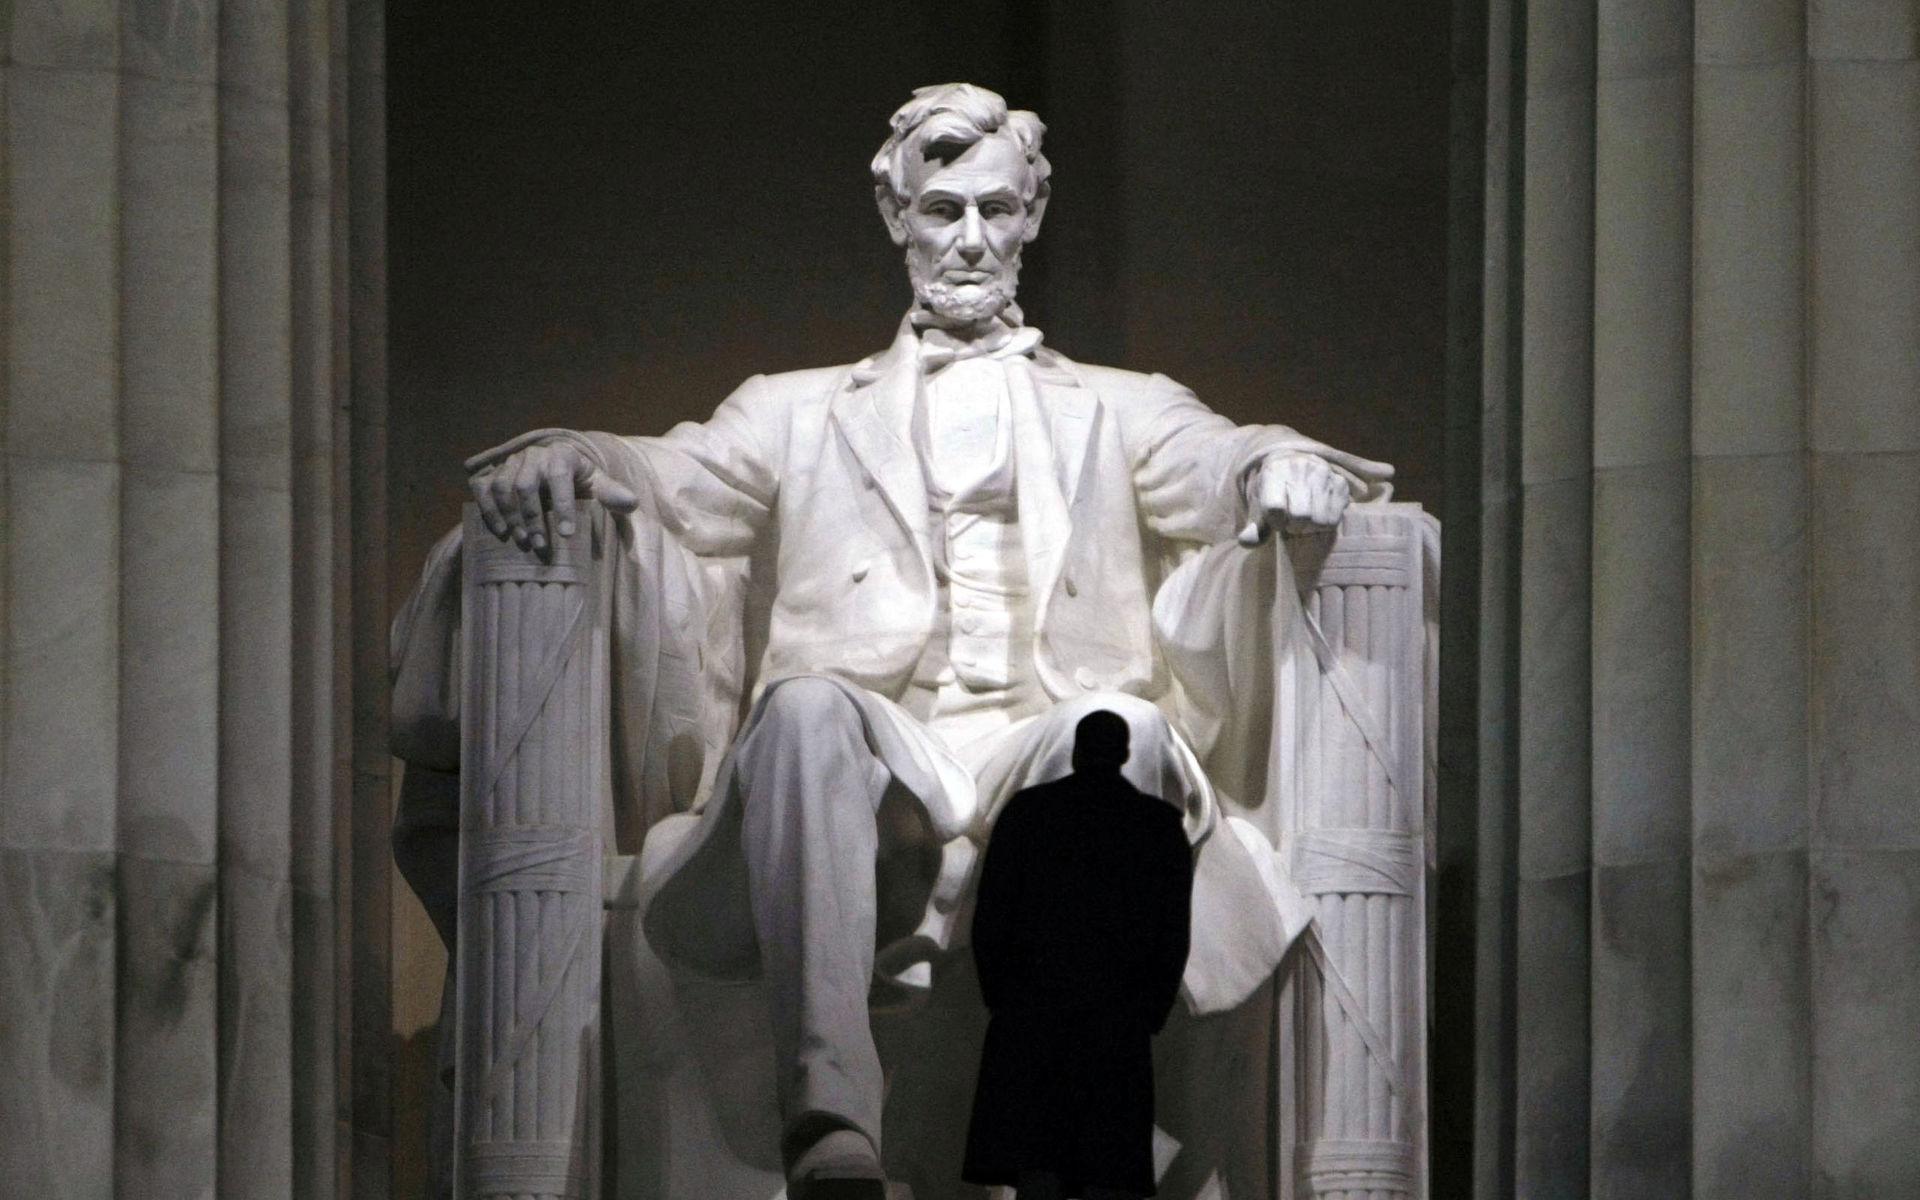 Lincoln Memorial  i Washington. Abraham Lincoln avskaffade slaveriet i Amerika med  emancipationsproklamationen 1863, vilken frigjorde slavarna  i de delar av Södern som inte kontrollerades av den federala armén. Proklamationen föregick det trettonde tillägget till USA:s konstitution två år senare, som slutligen gjorde slaveri olagligt i unionen.